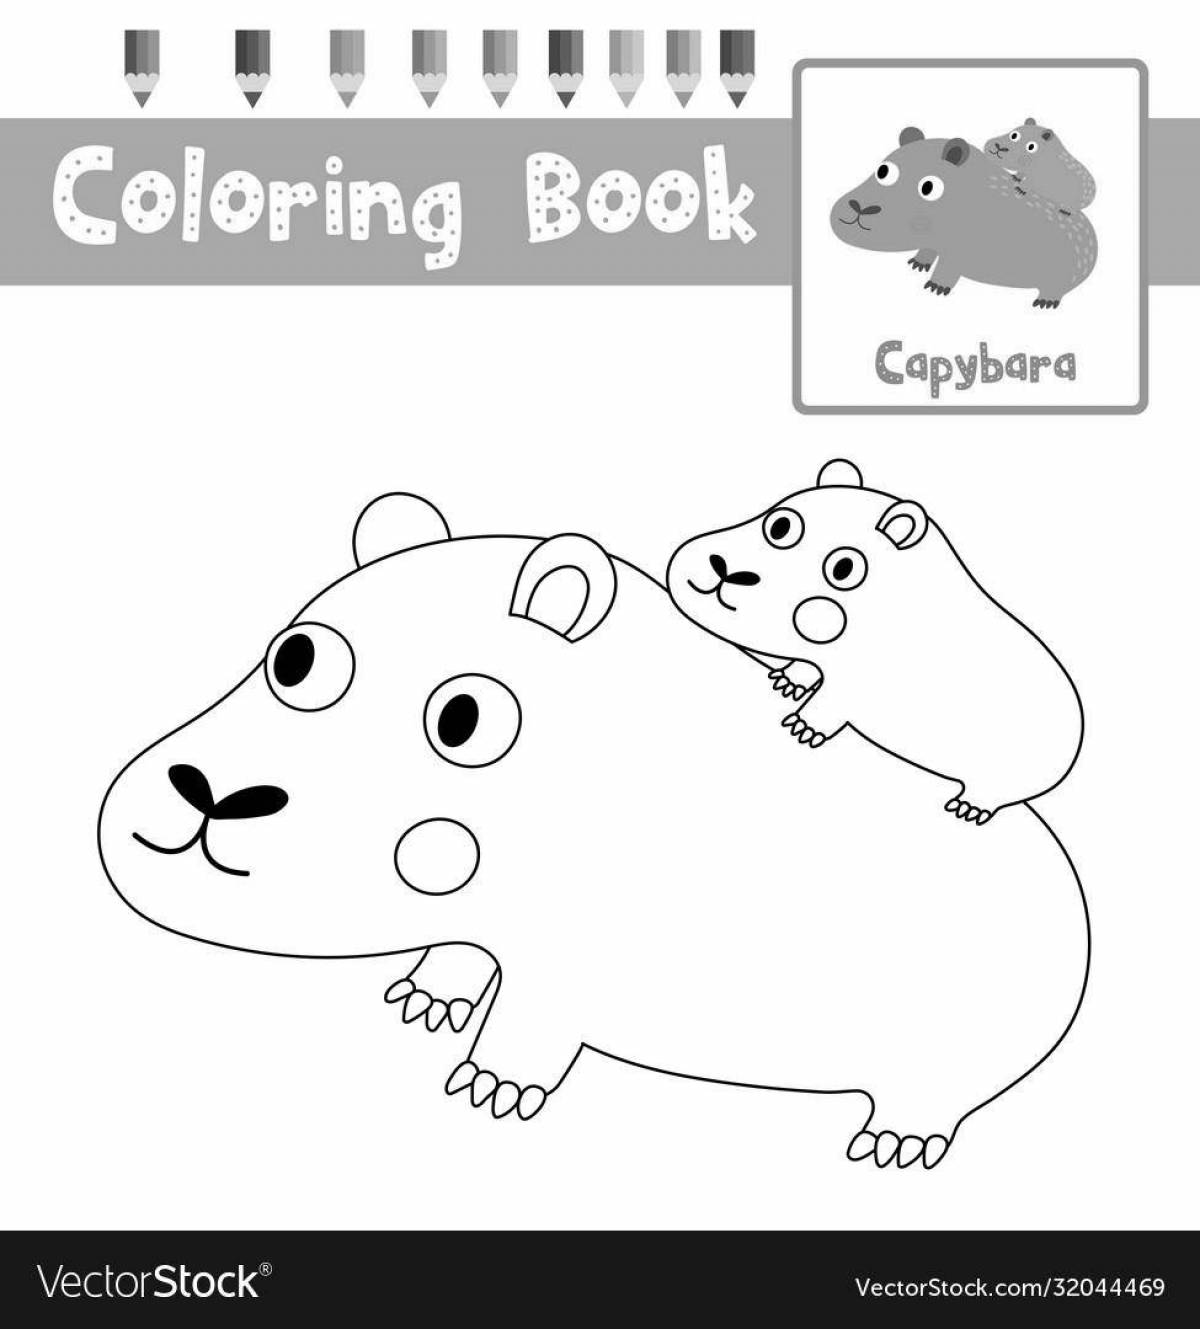 Capybara fun coloring book for kids